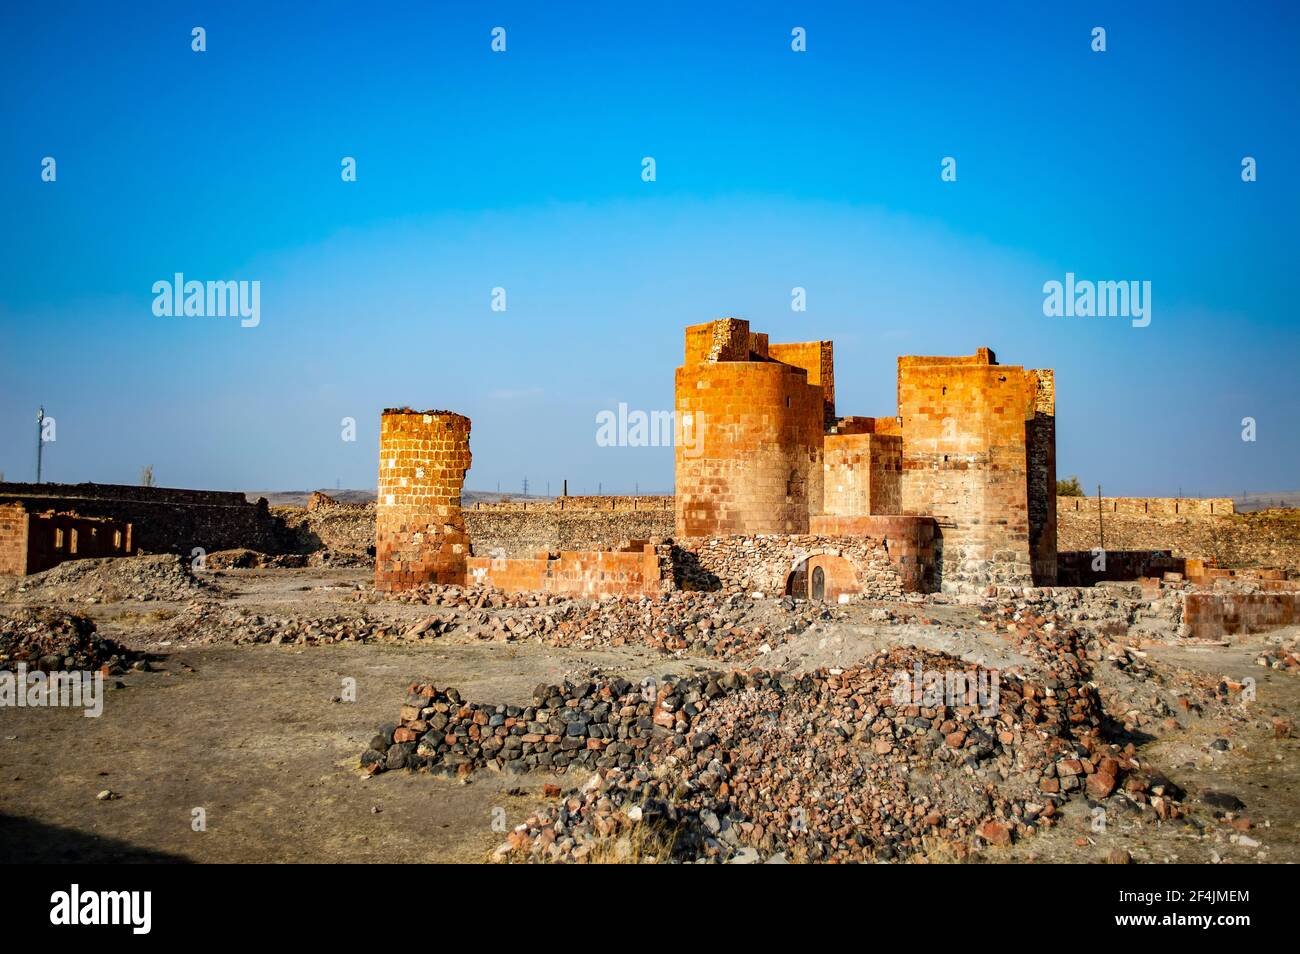 Les ruines de la forteresse de Dashtadem dans le village de Dashtadem en Arménie, une destination touristique célèbre Banque D'Images